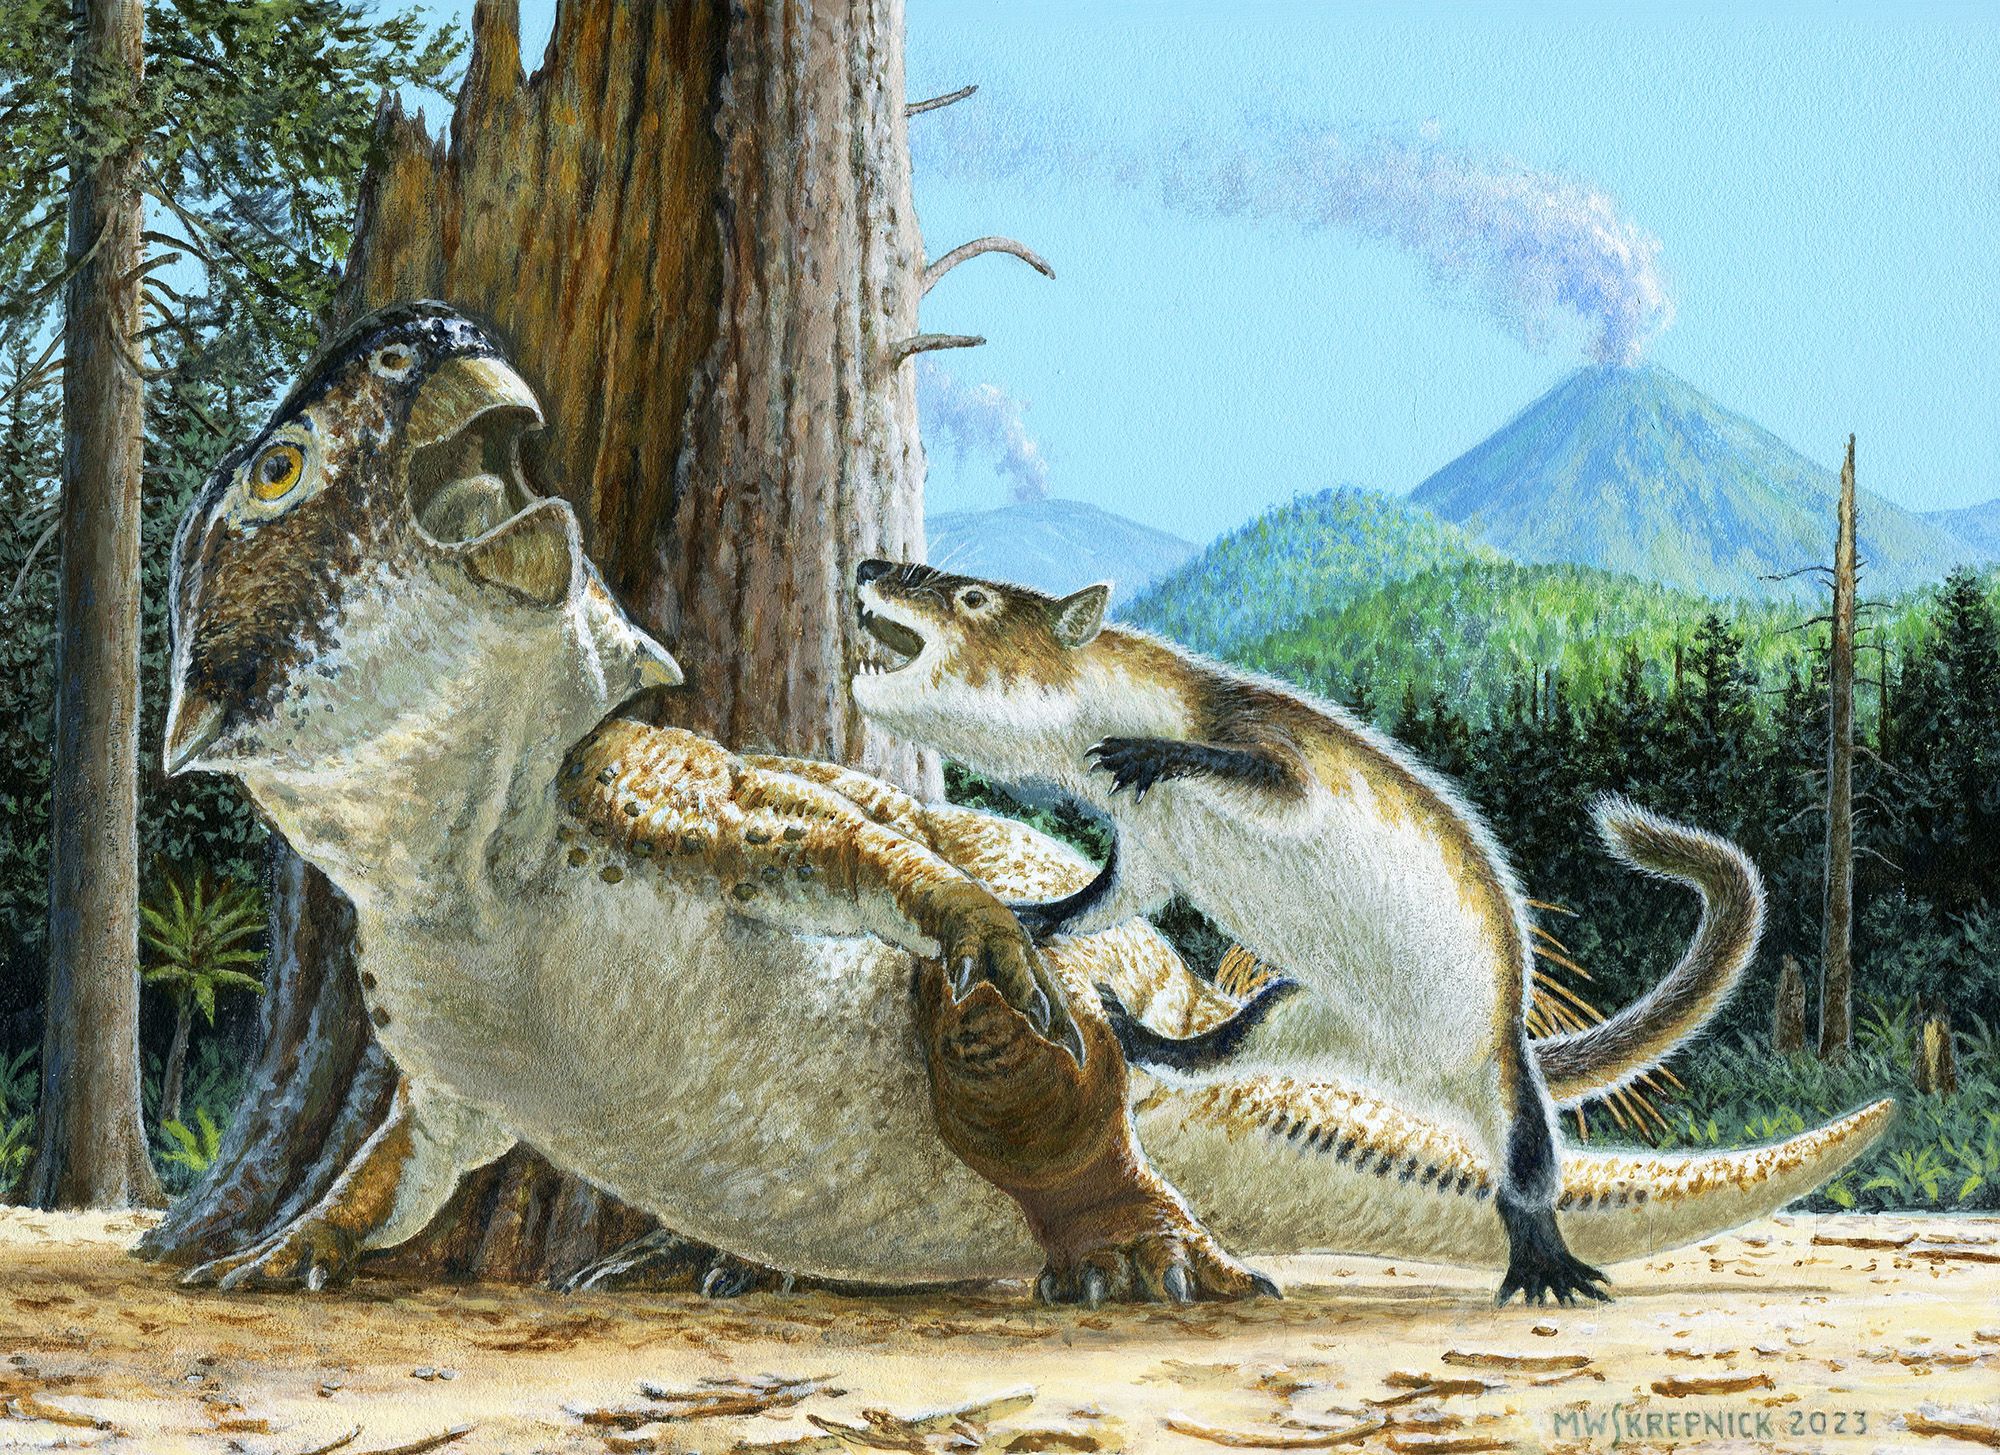 https://media.cnn.com/api/v1/images/stellar/prod/230718111730-08-fossil-discovery-mammal-dinosaur-battle.jpg?c=original